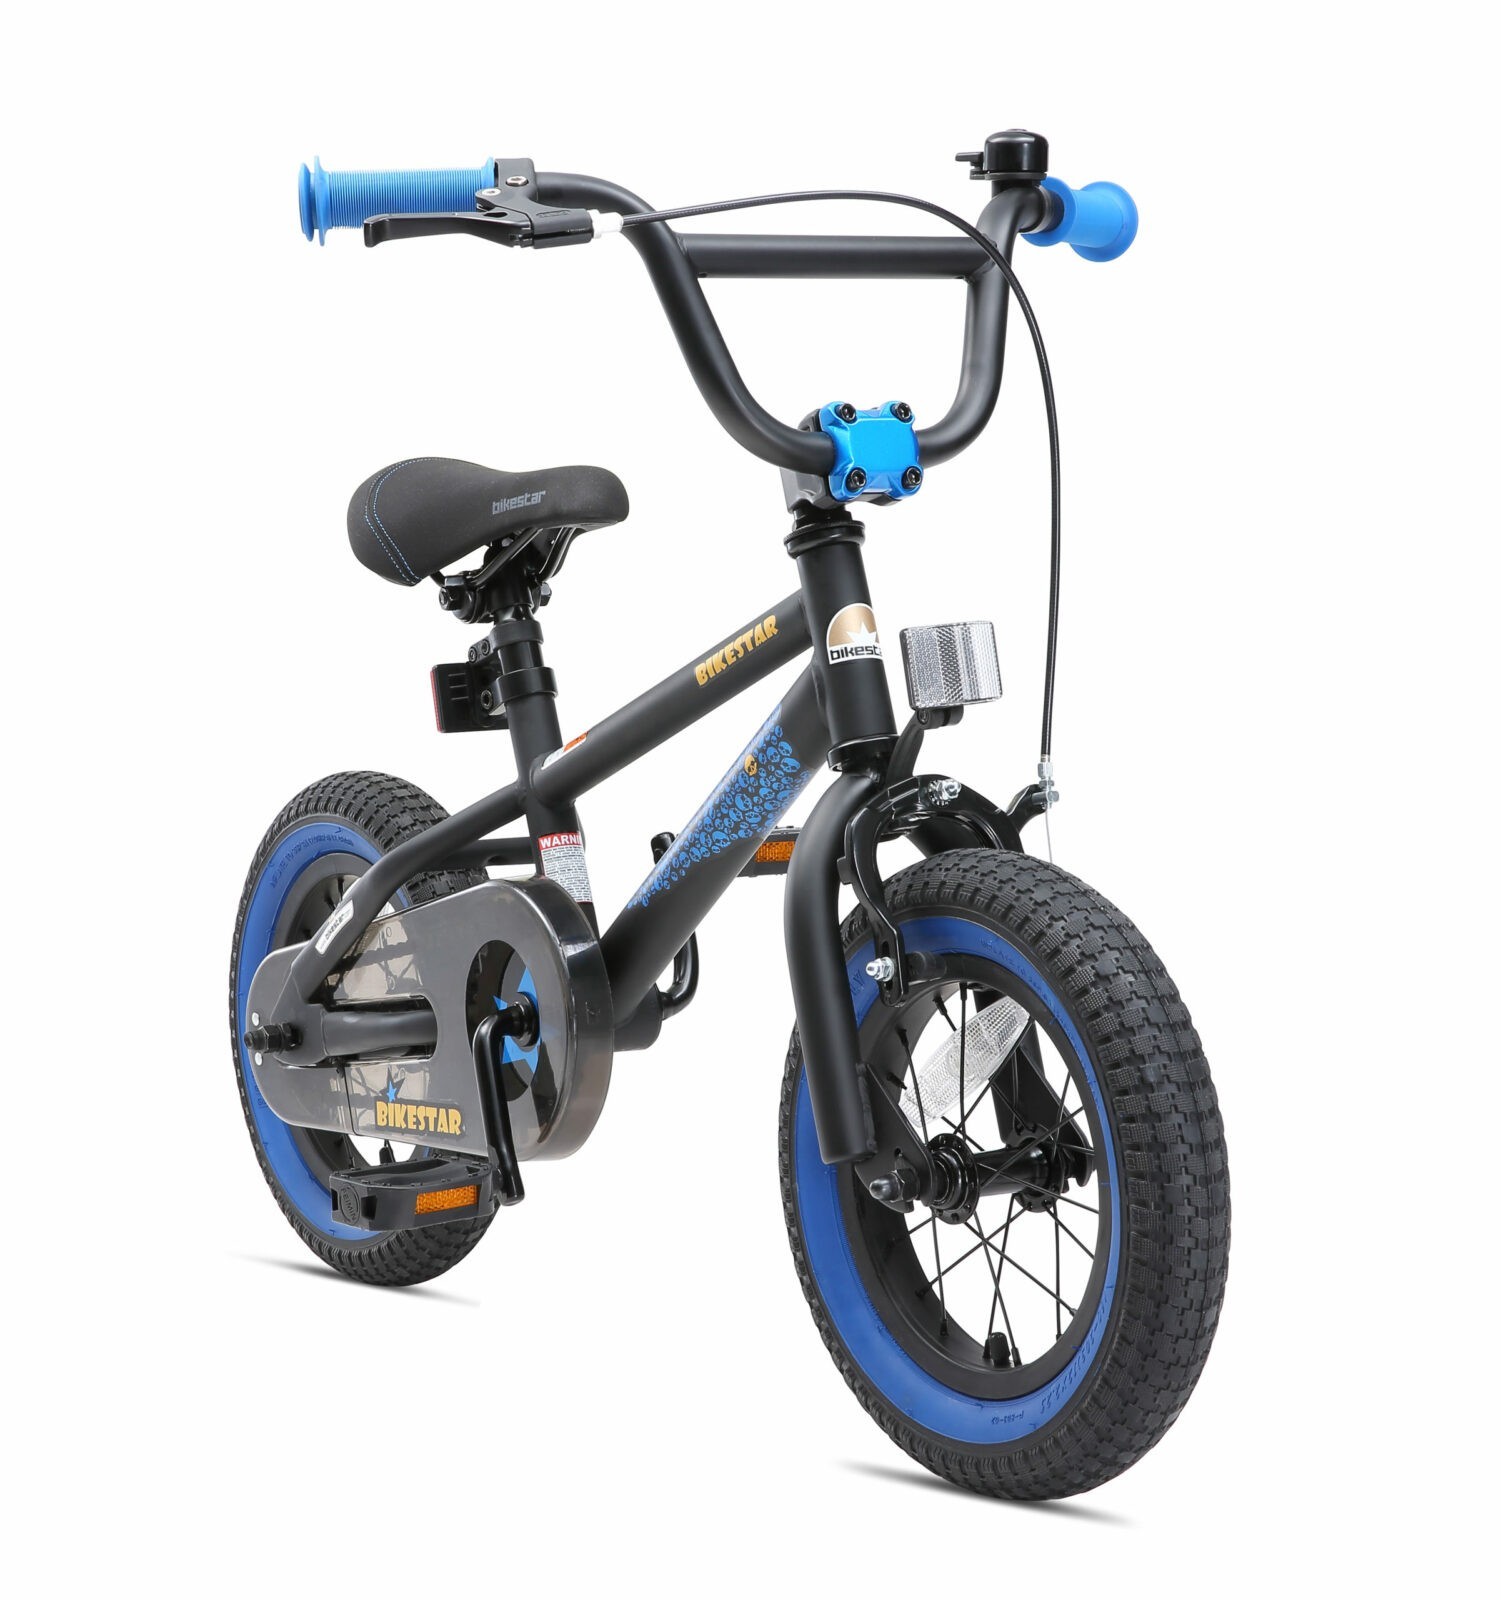 Corporation censuur zonlicht Bikestar, BMX kinderfiets, 12 inch, zwart / blauw - Fietsdirect